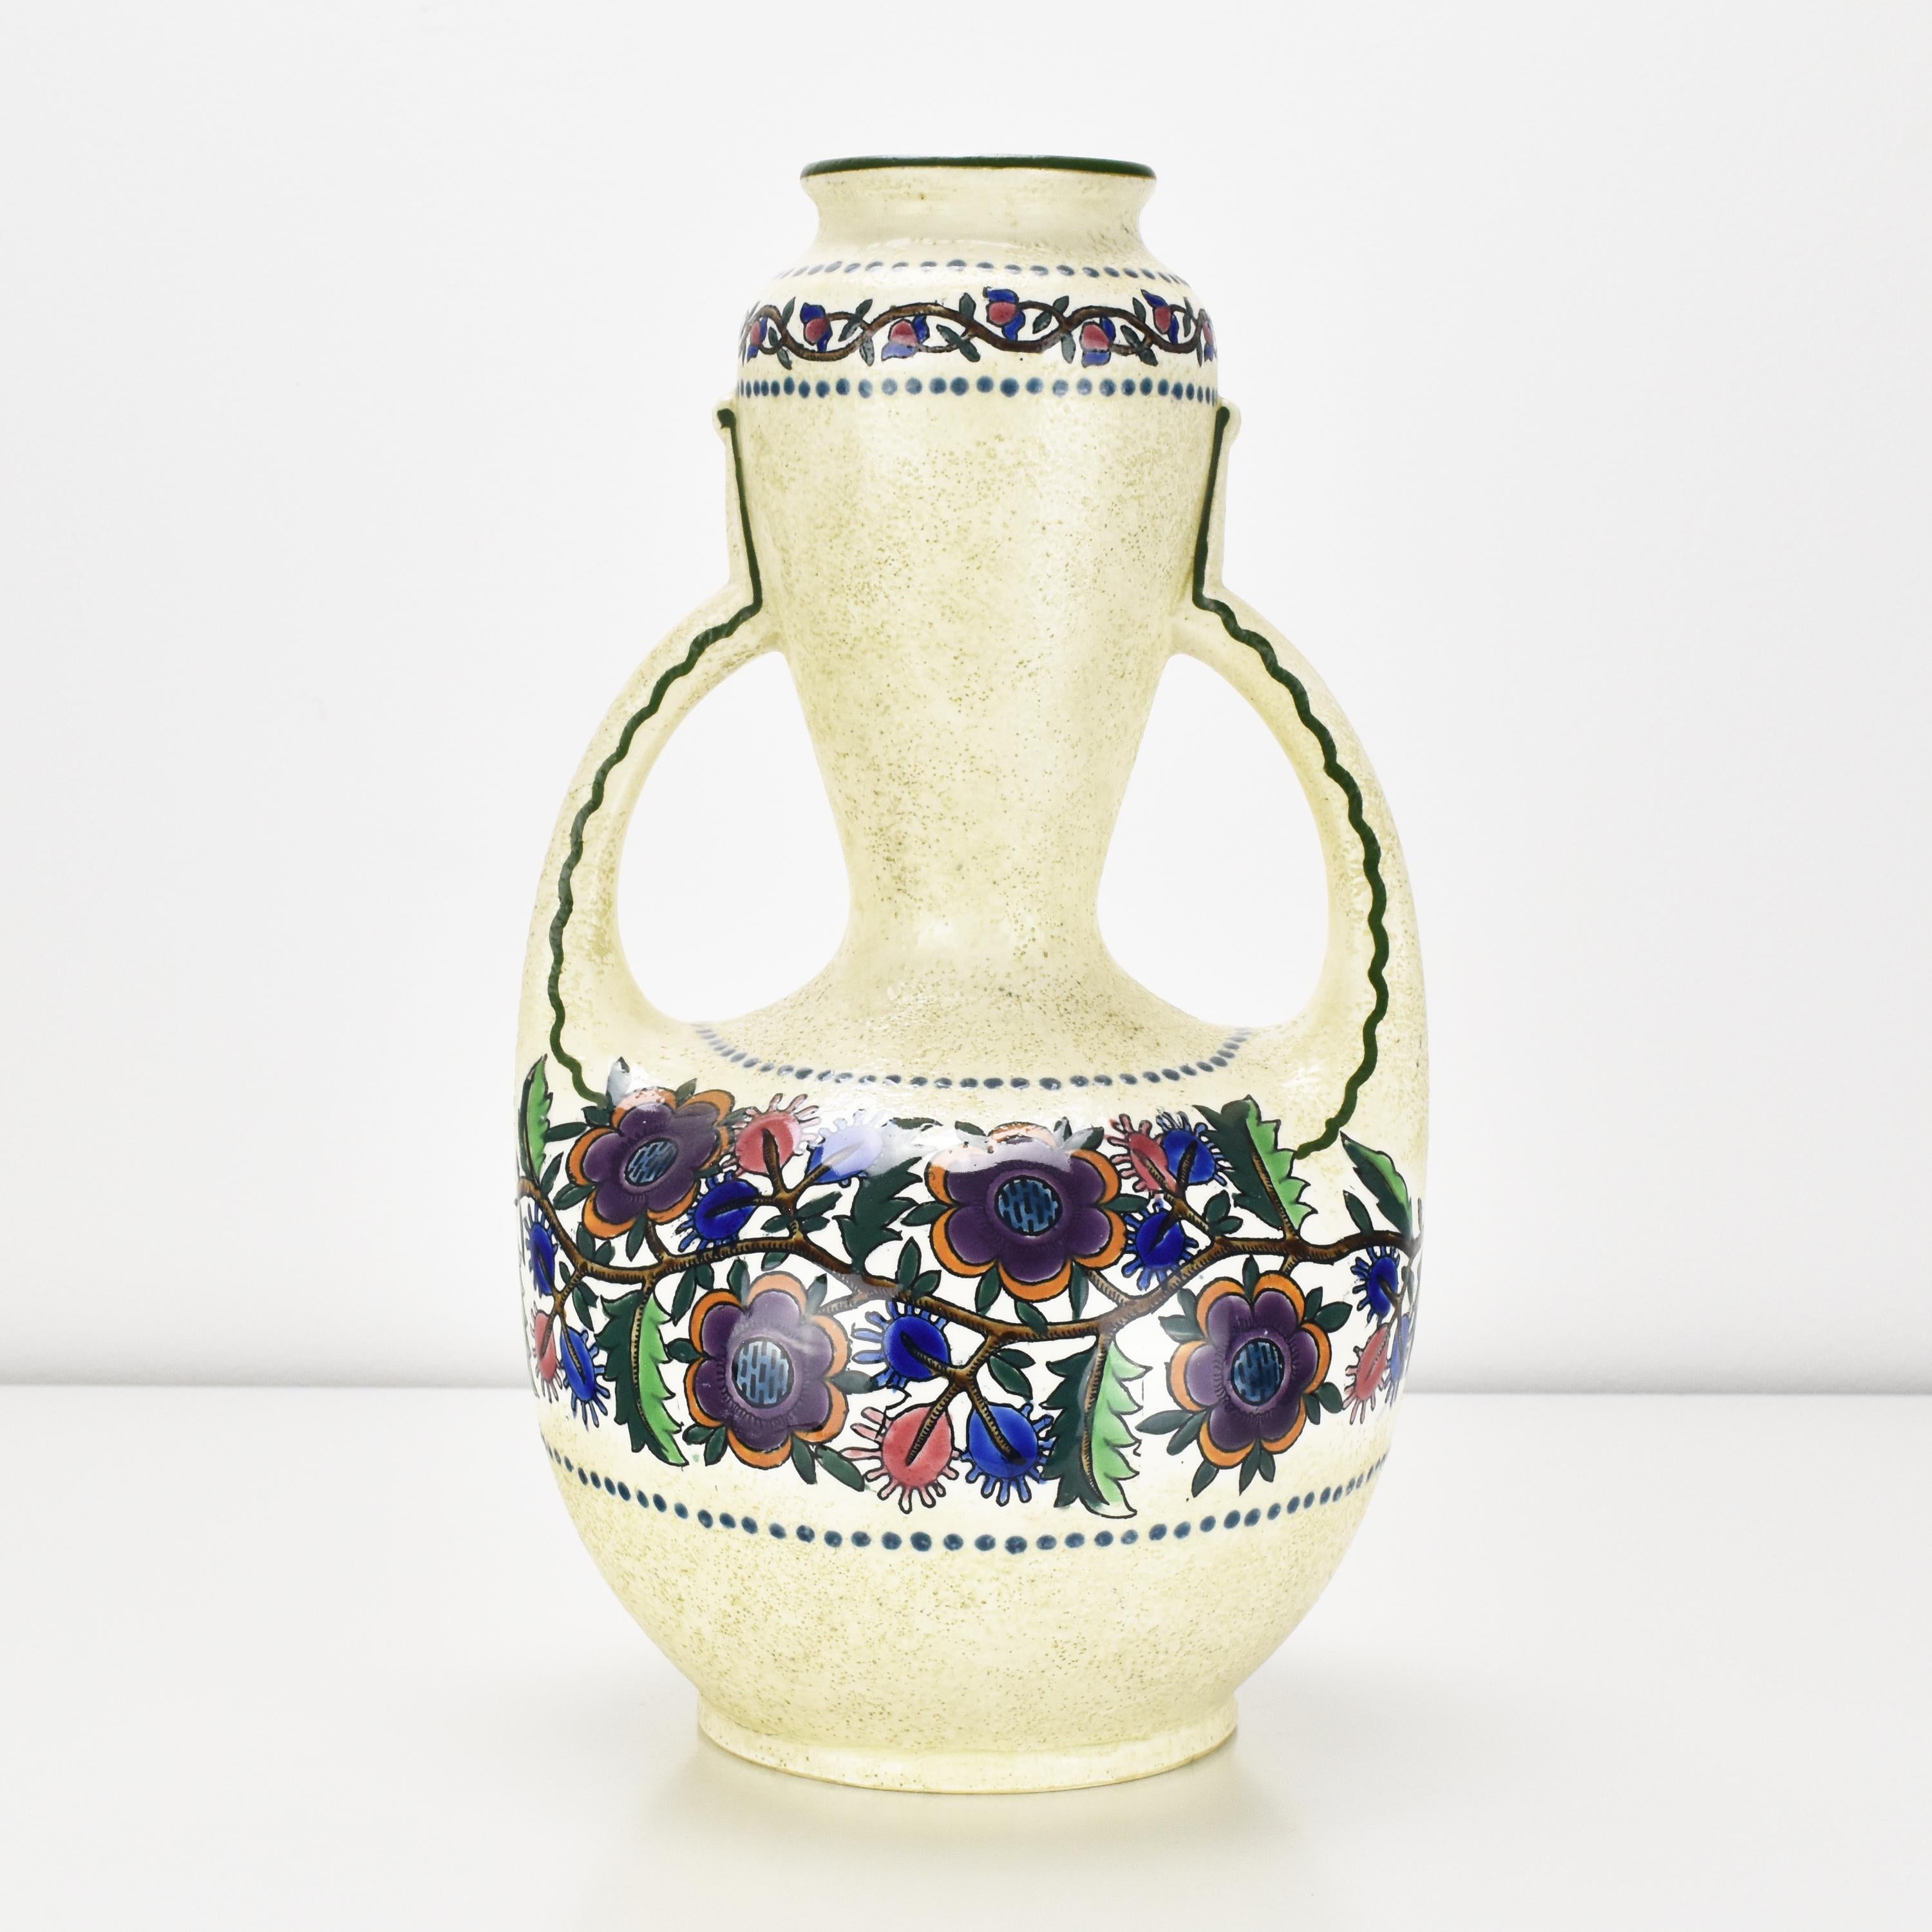 Ce grand et inhabituel vase en céramique à double anse, décoré à la main de fleurs, d'Ampora Turn-Teplitz, témoigne de la sensibilité artistique caractéristique de l'Art nouveau viennois, avec un accent mis sur les formes organiques et les motifs